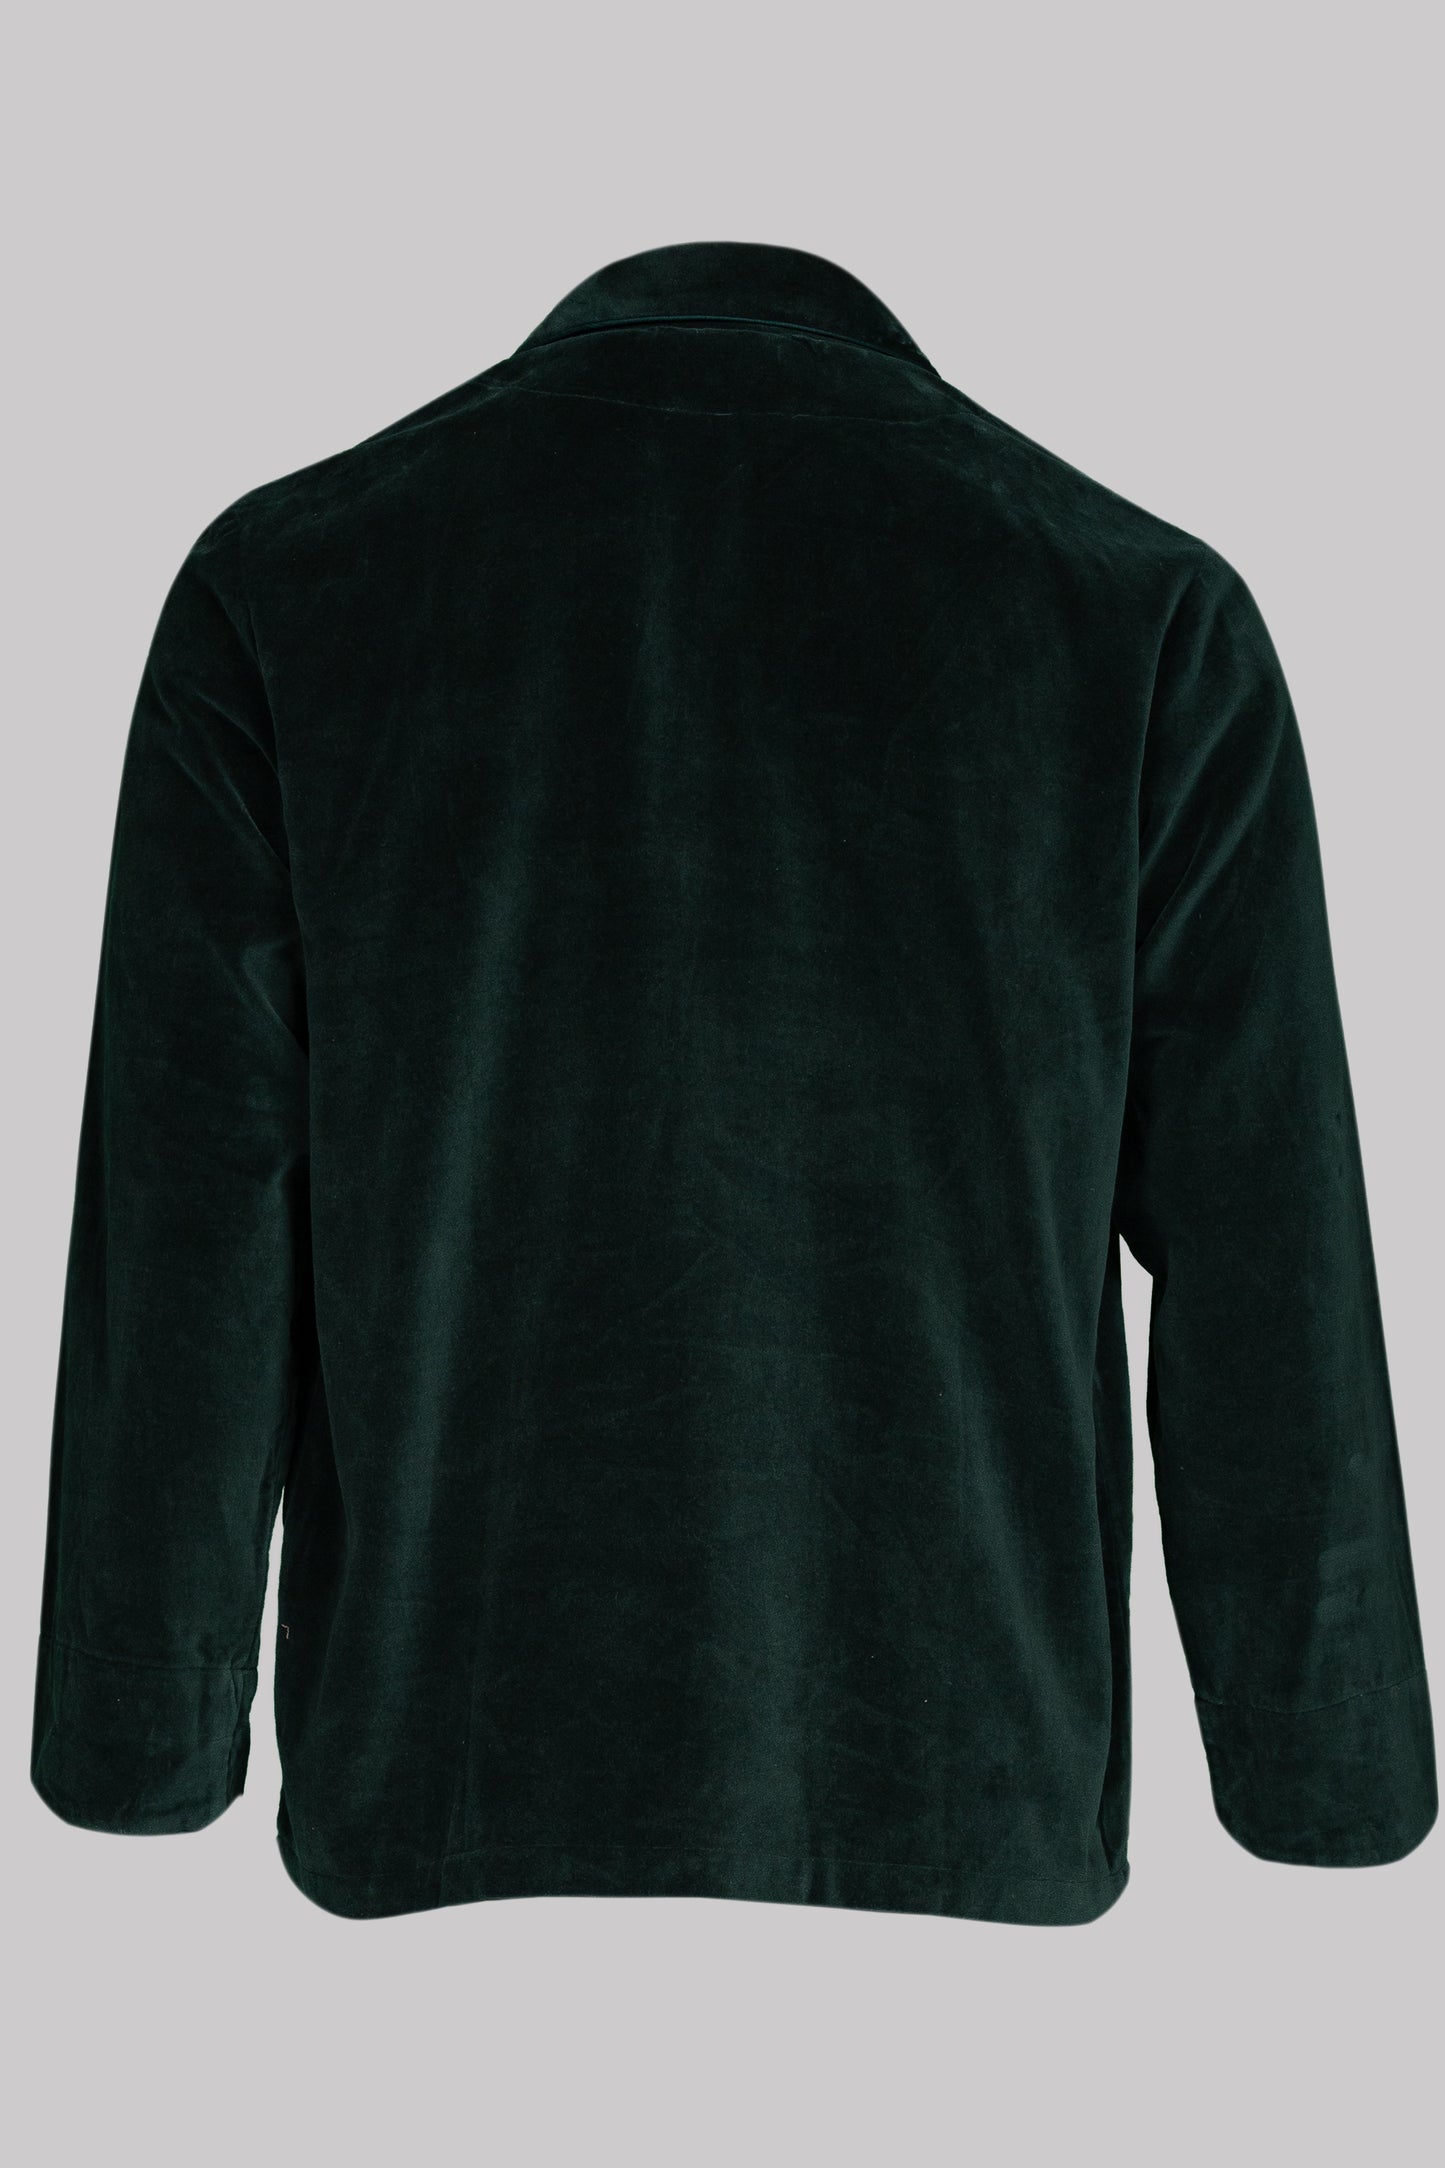 HUSSAR-SHIRT VELVETGREEN with velvetgreen braiding 100% COTTON Velvet fabric-dyed